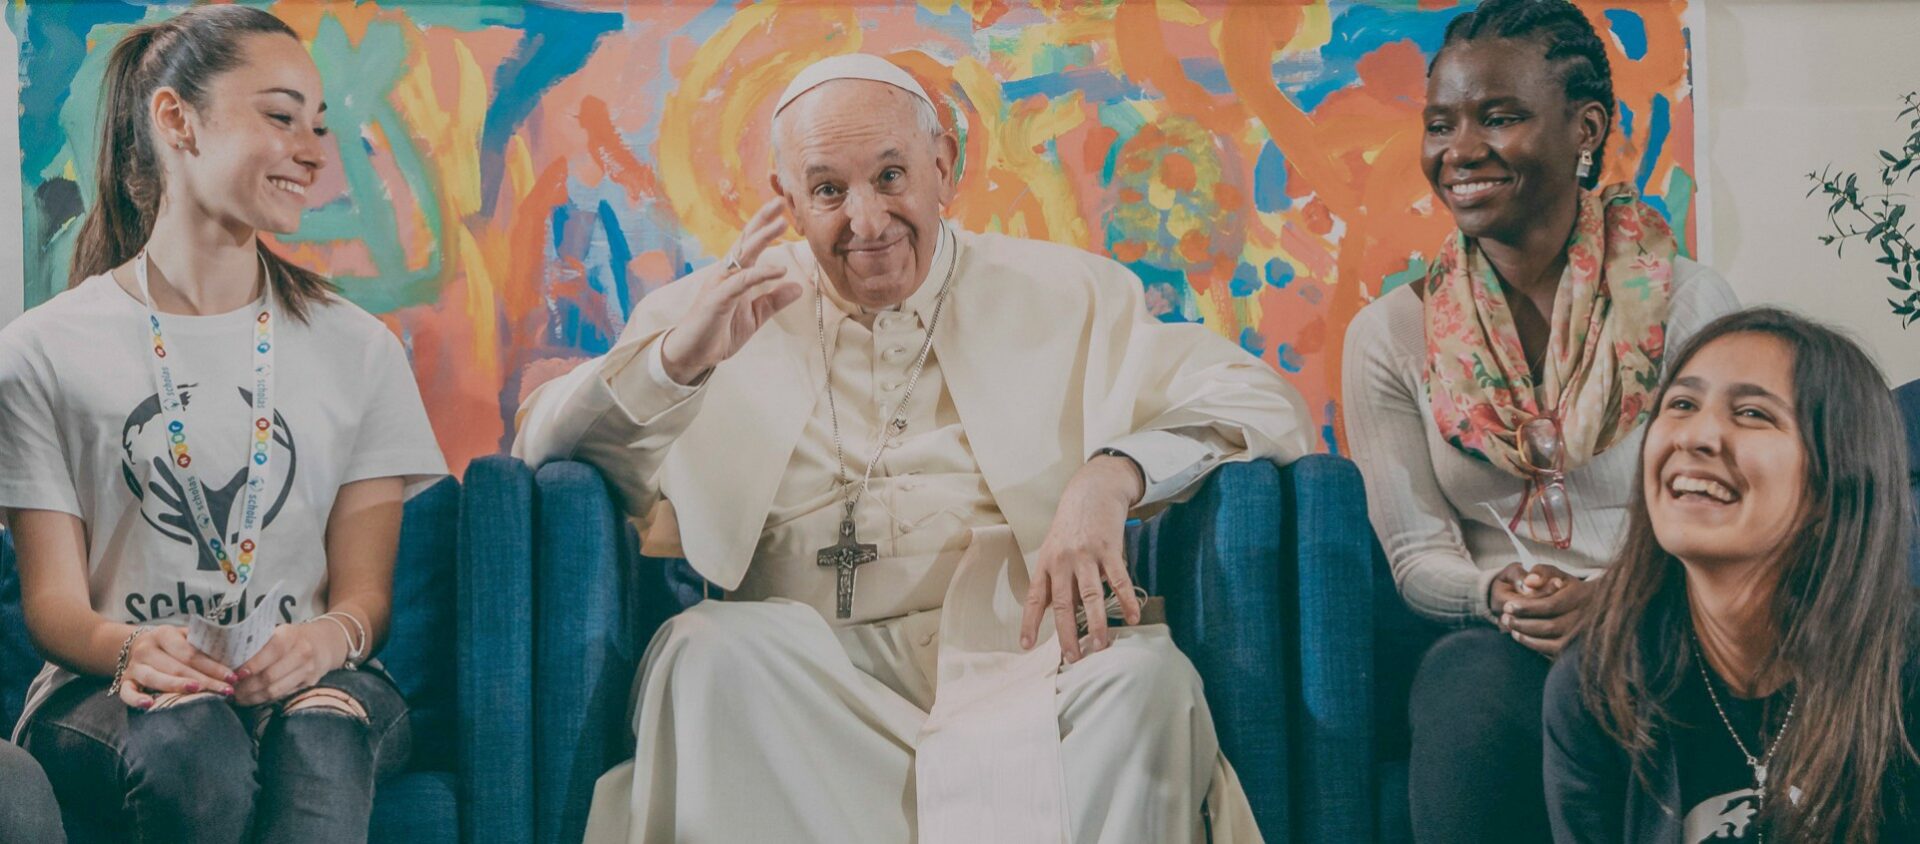 Le pape François participe à une rencontre virtuelle avec des jeunes de Scholas Occurrentes | © scholasoccurrentes.org